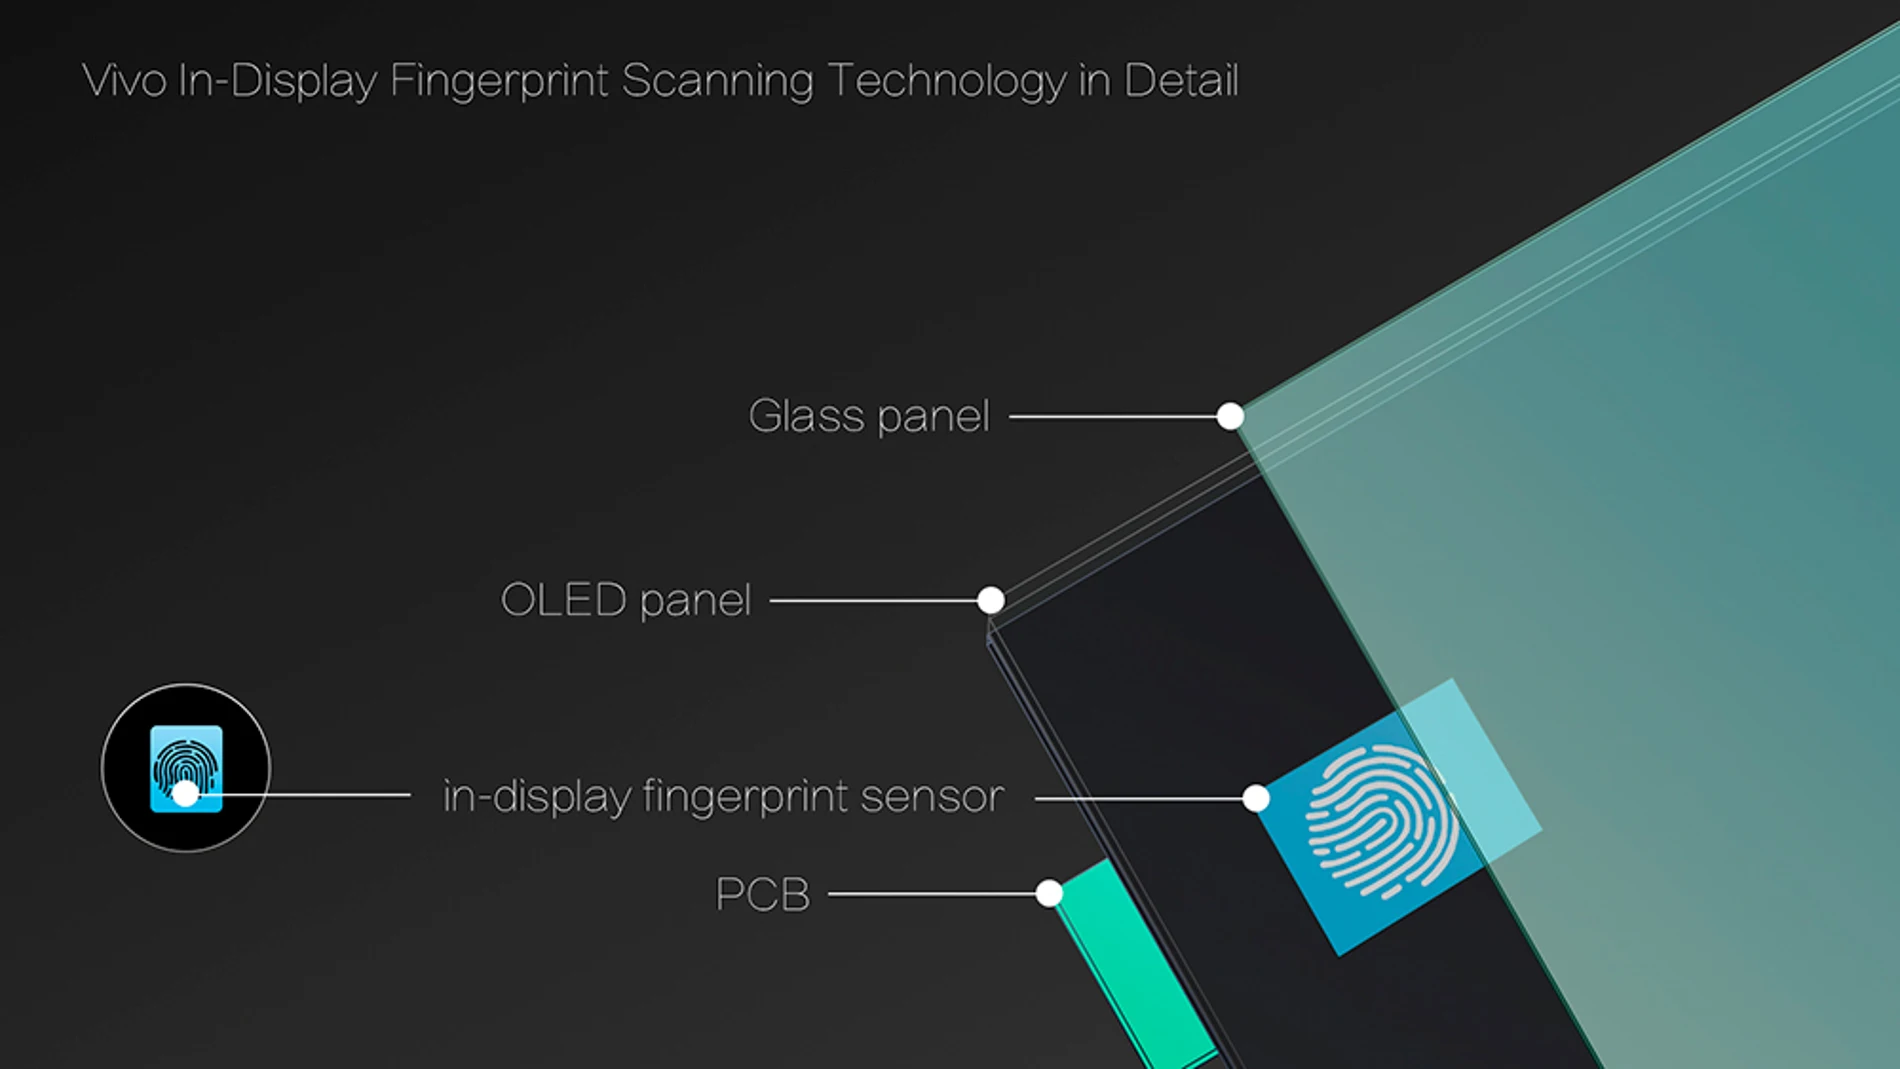 Funcionamiento del sistema de verificación Vivo In-Display Fingerprint Scanning Technology